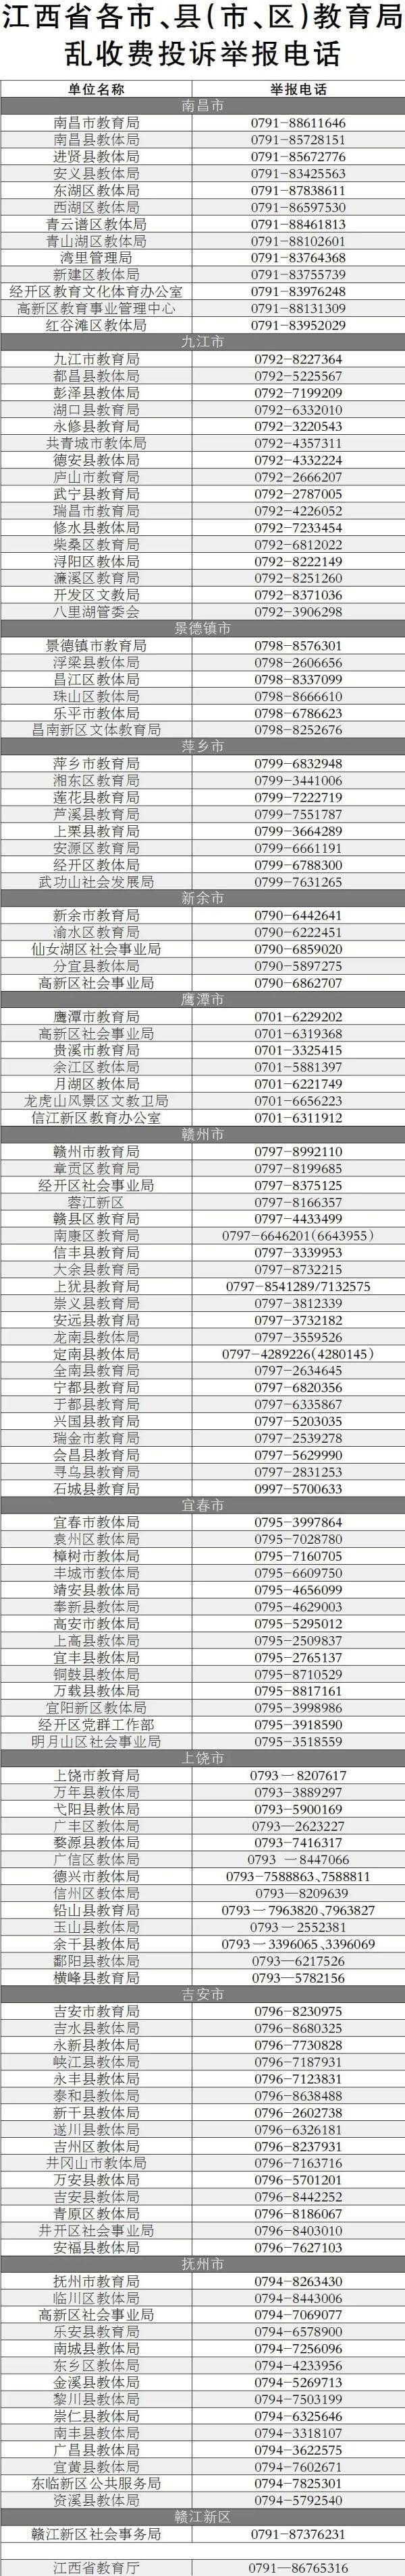 江西省教育考试院网络助学平台